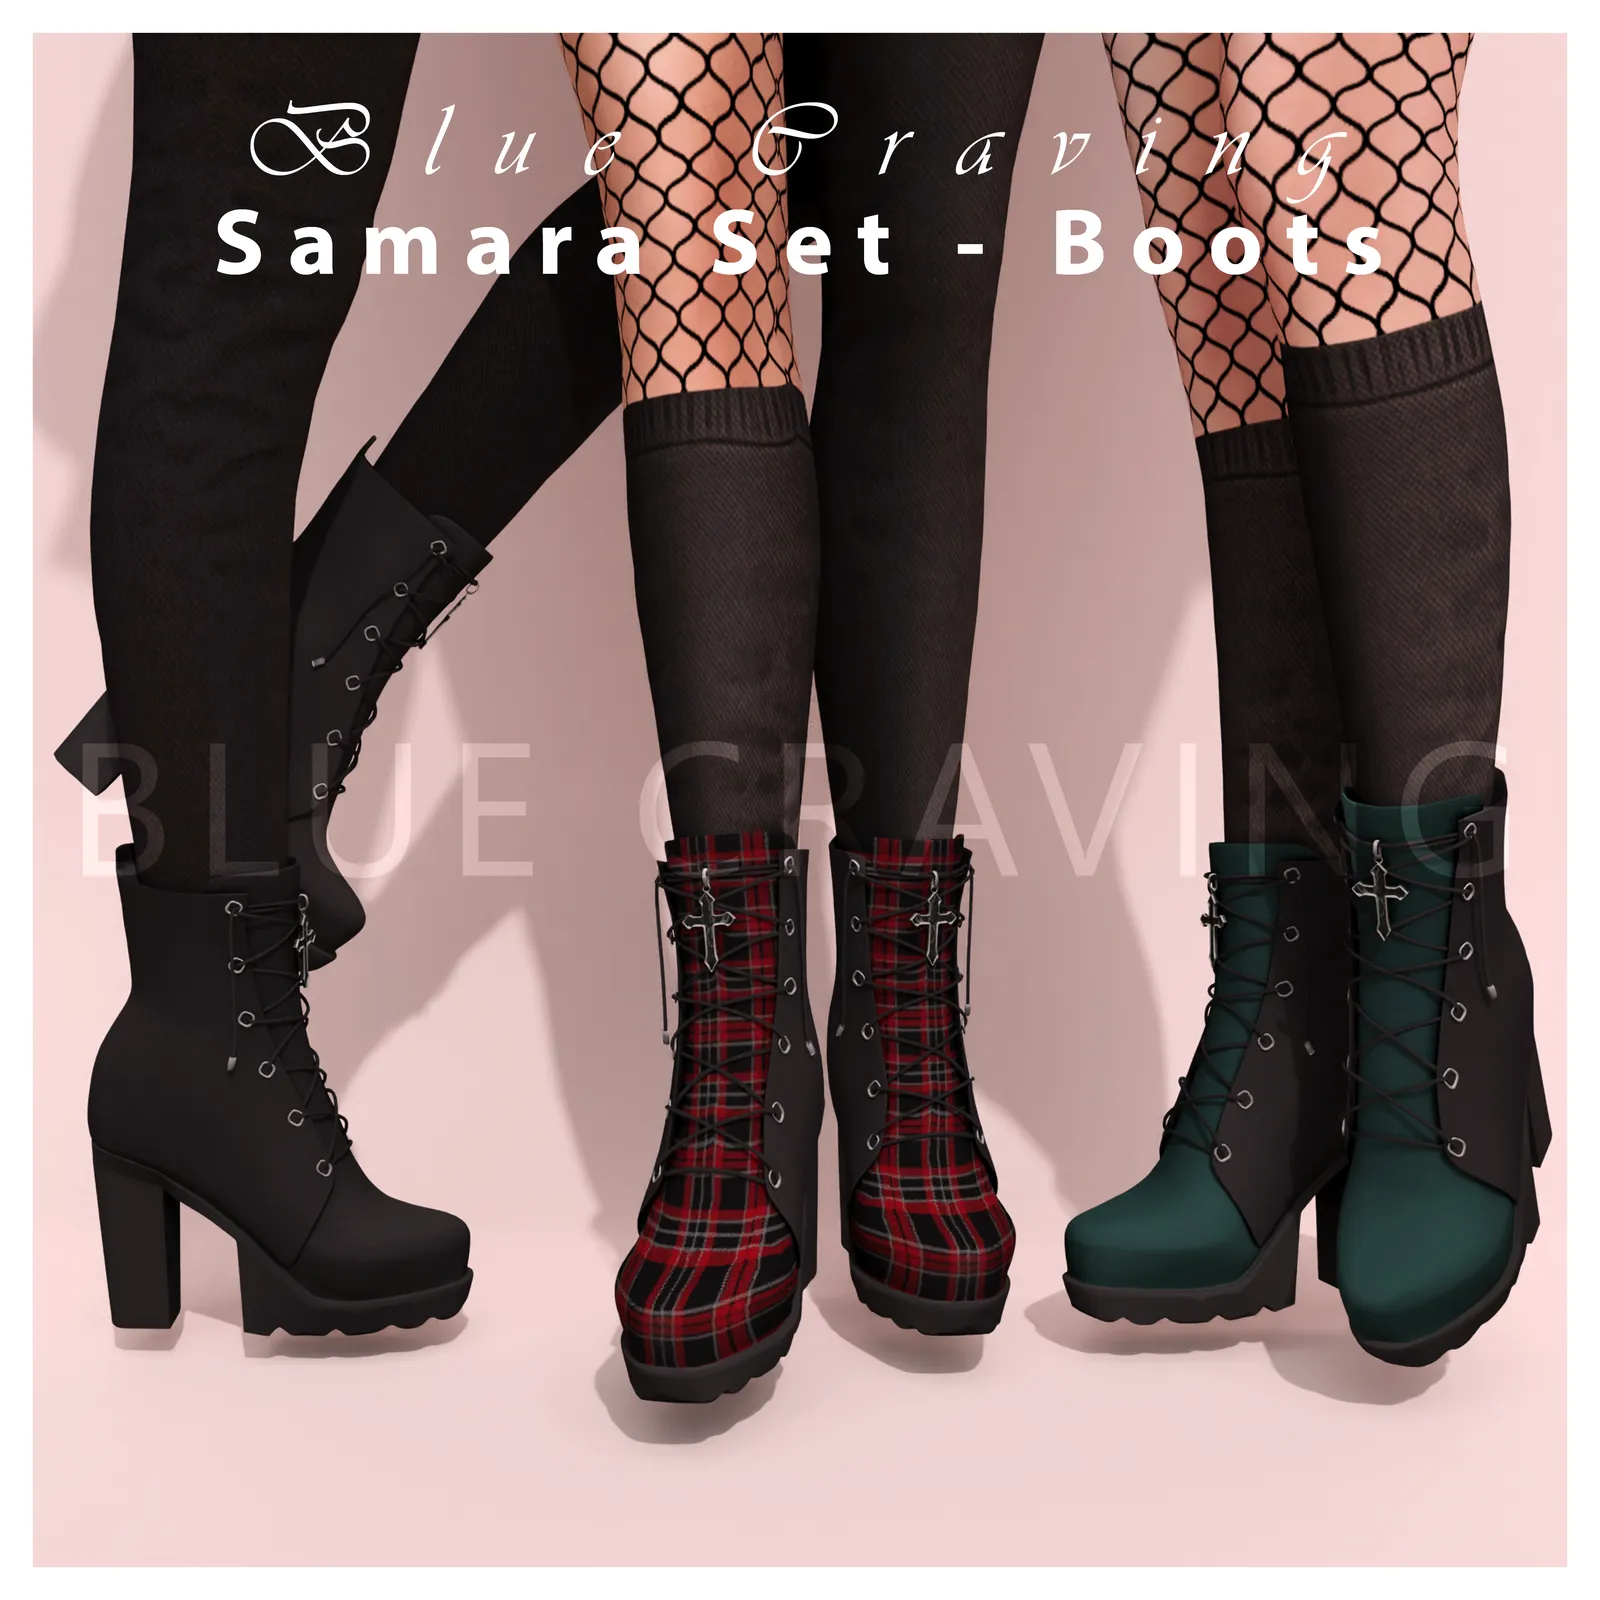 Samara set - Shoes